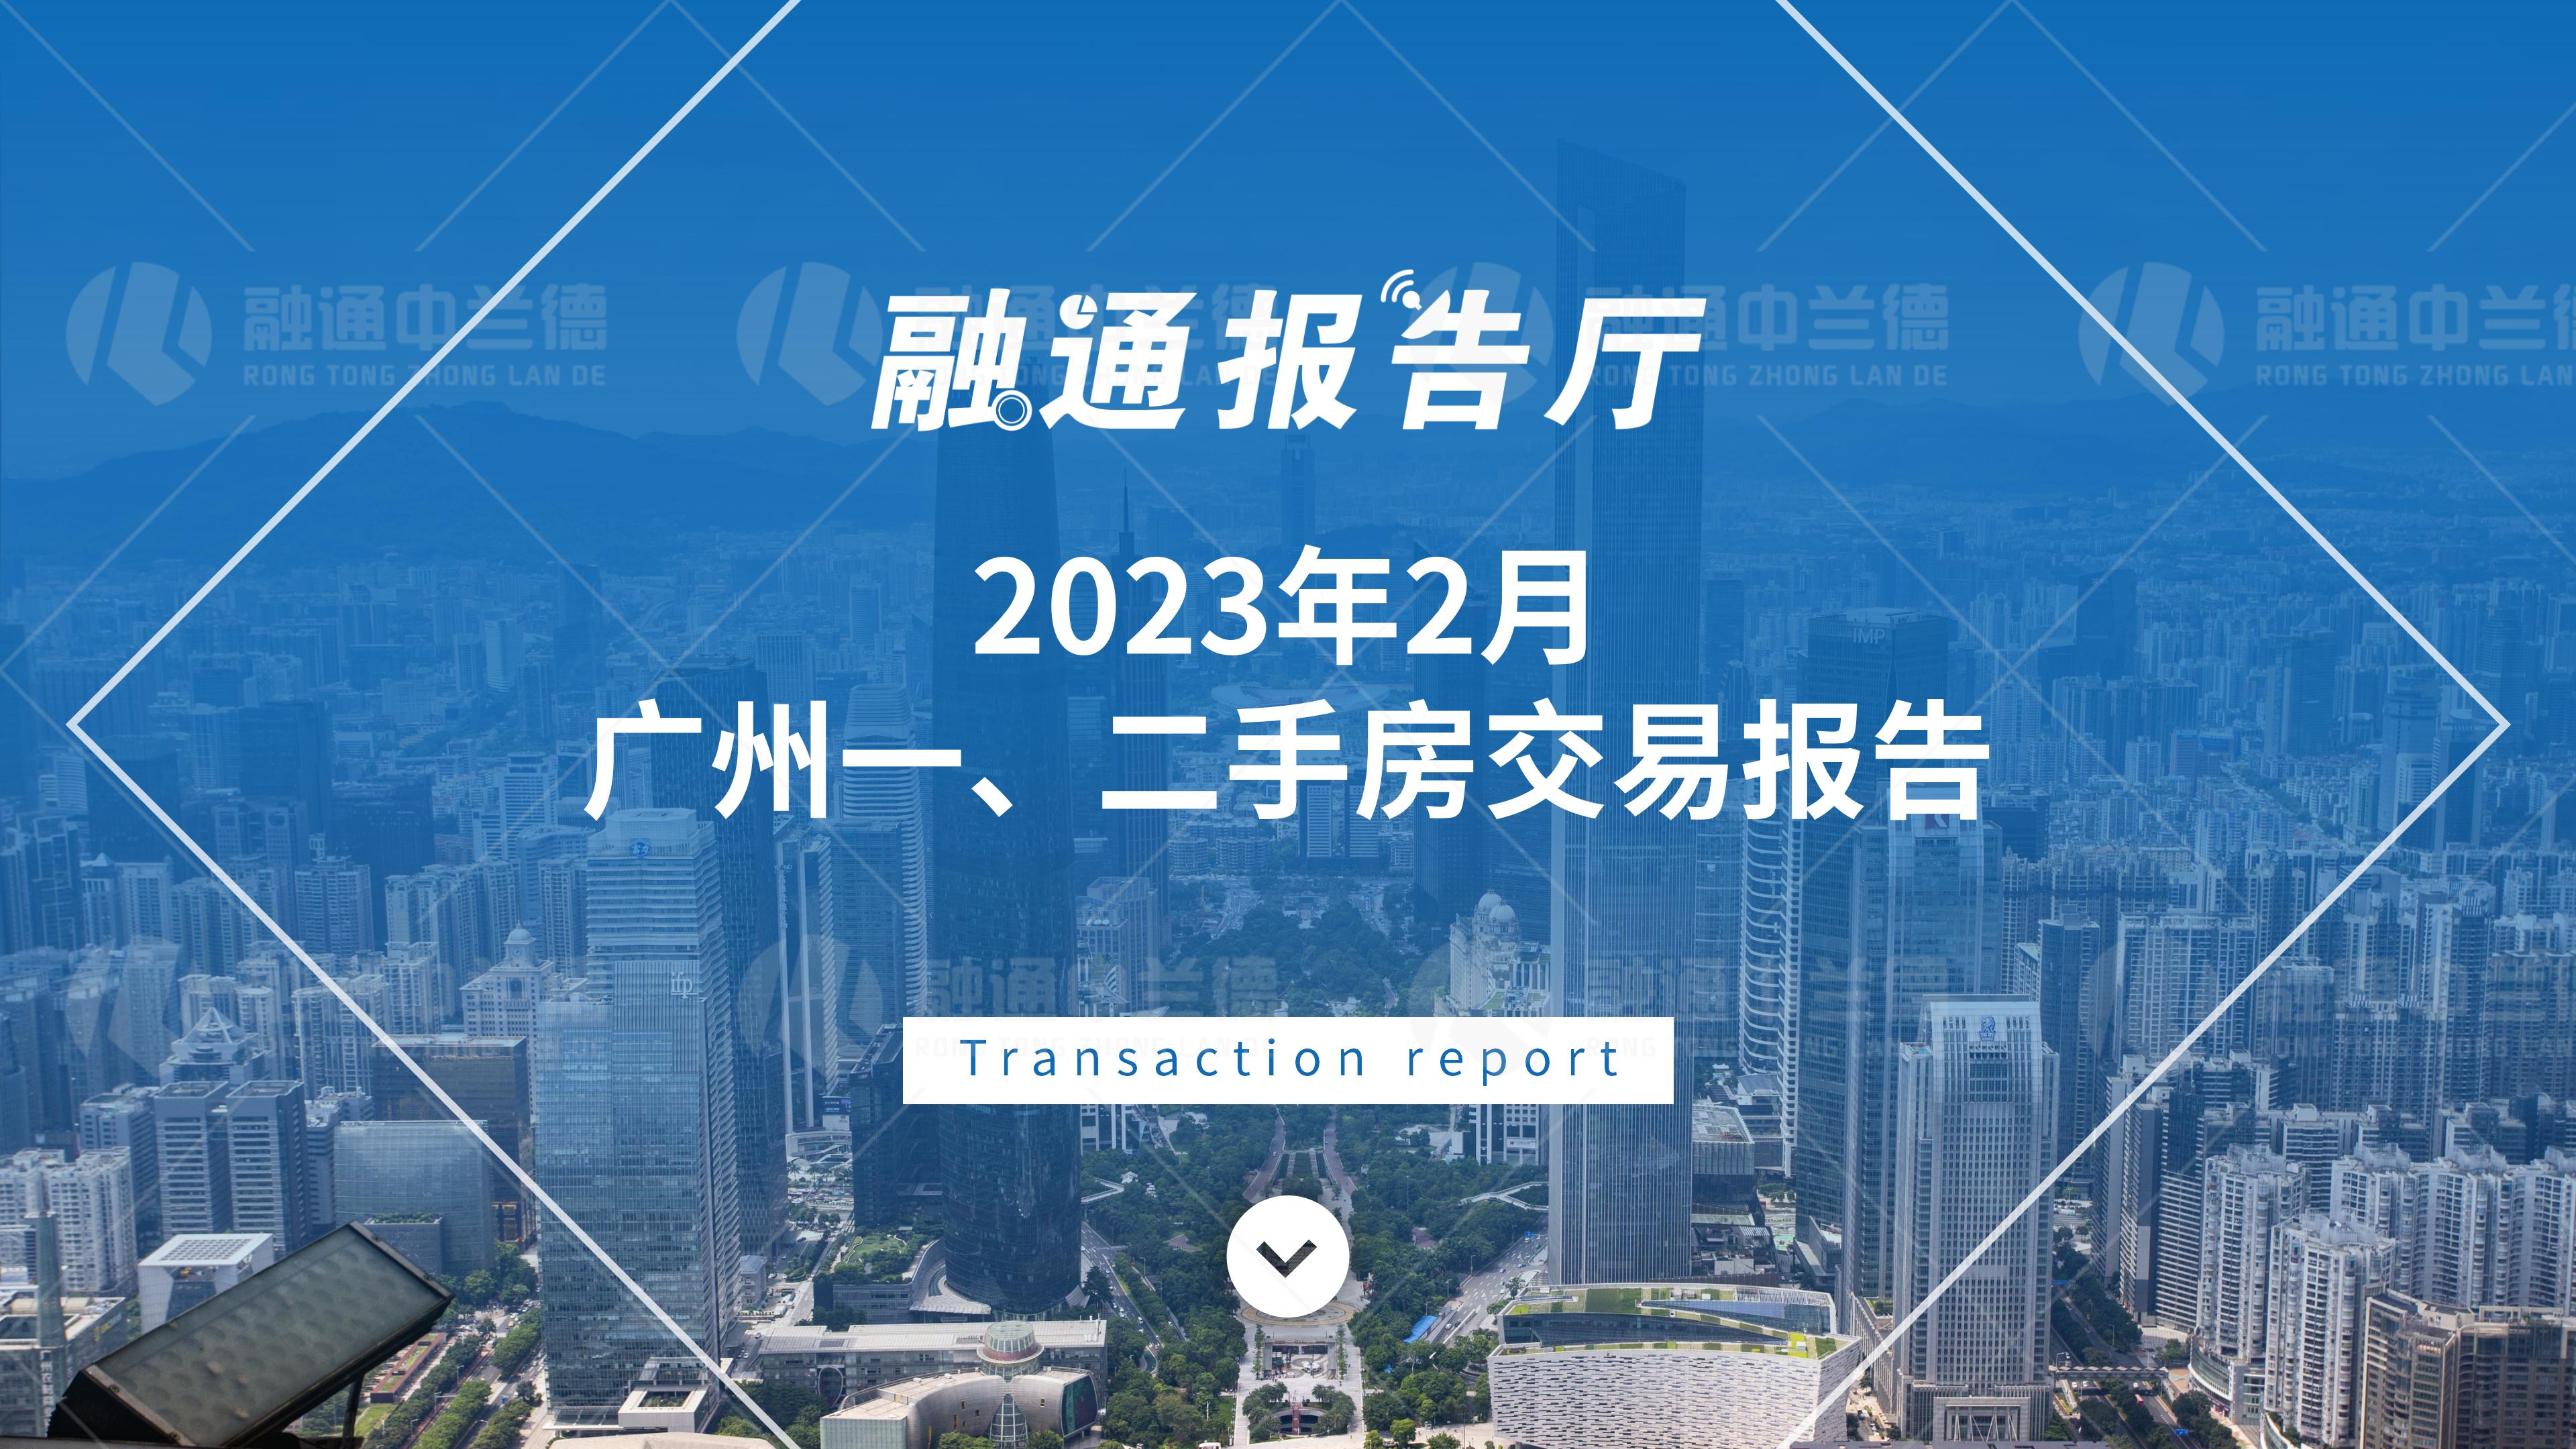 【融通报告厅】2023年2月广州一、二手房交易报告